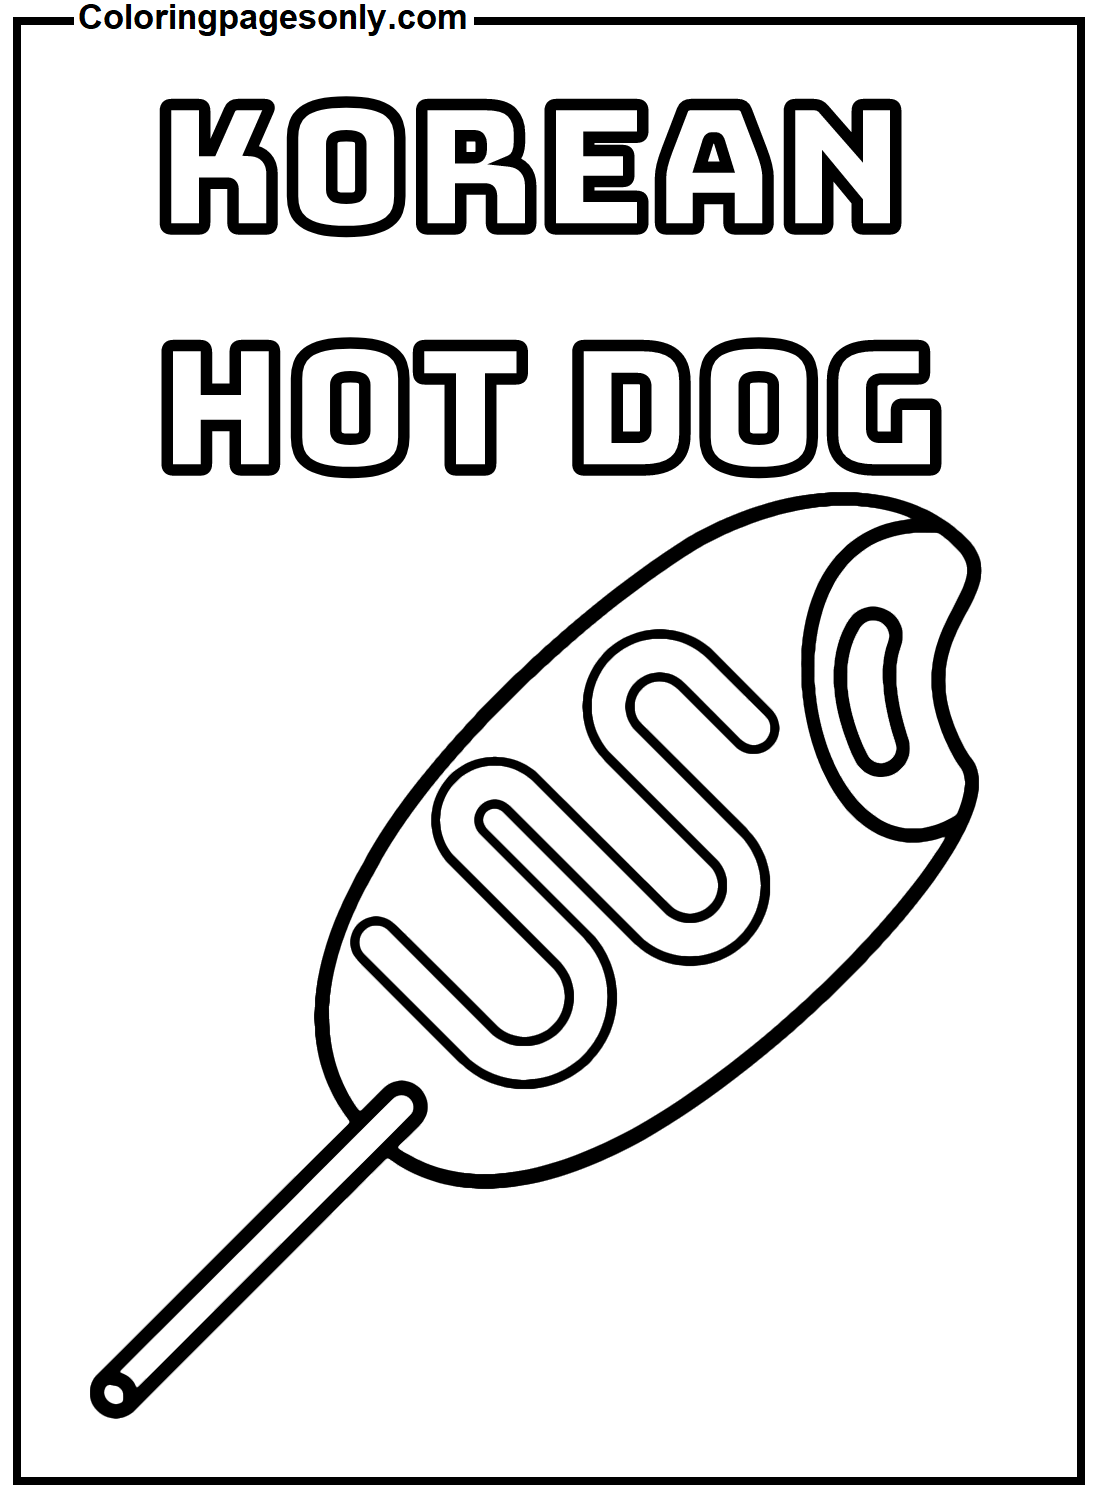 Hot Dog coréen de Hot Dog